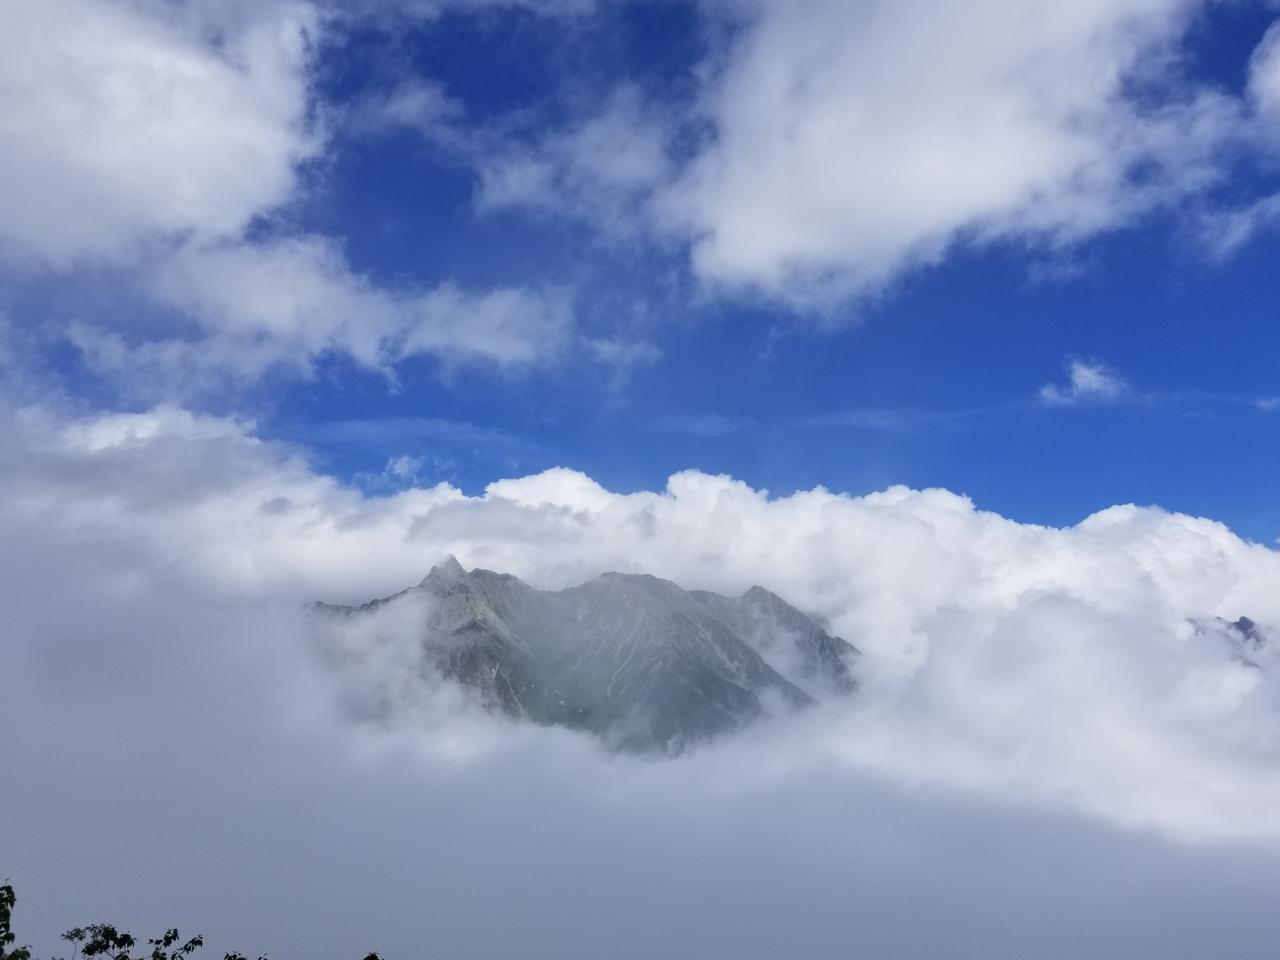 奇跡の瞬間 飛騨から登る北アルプスフォトコンテスト 第2弾 山の写真大募集 Yamakei Online 山と渓谷社